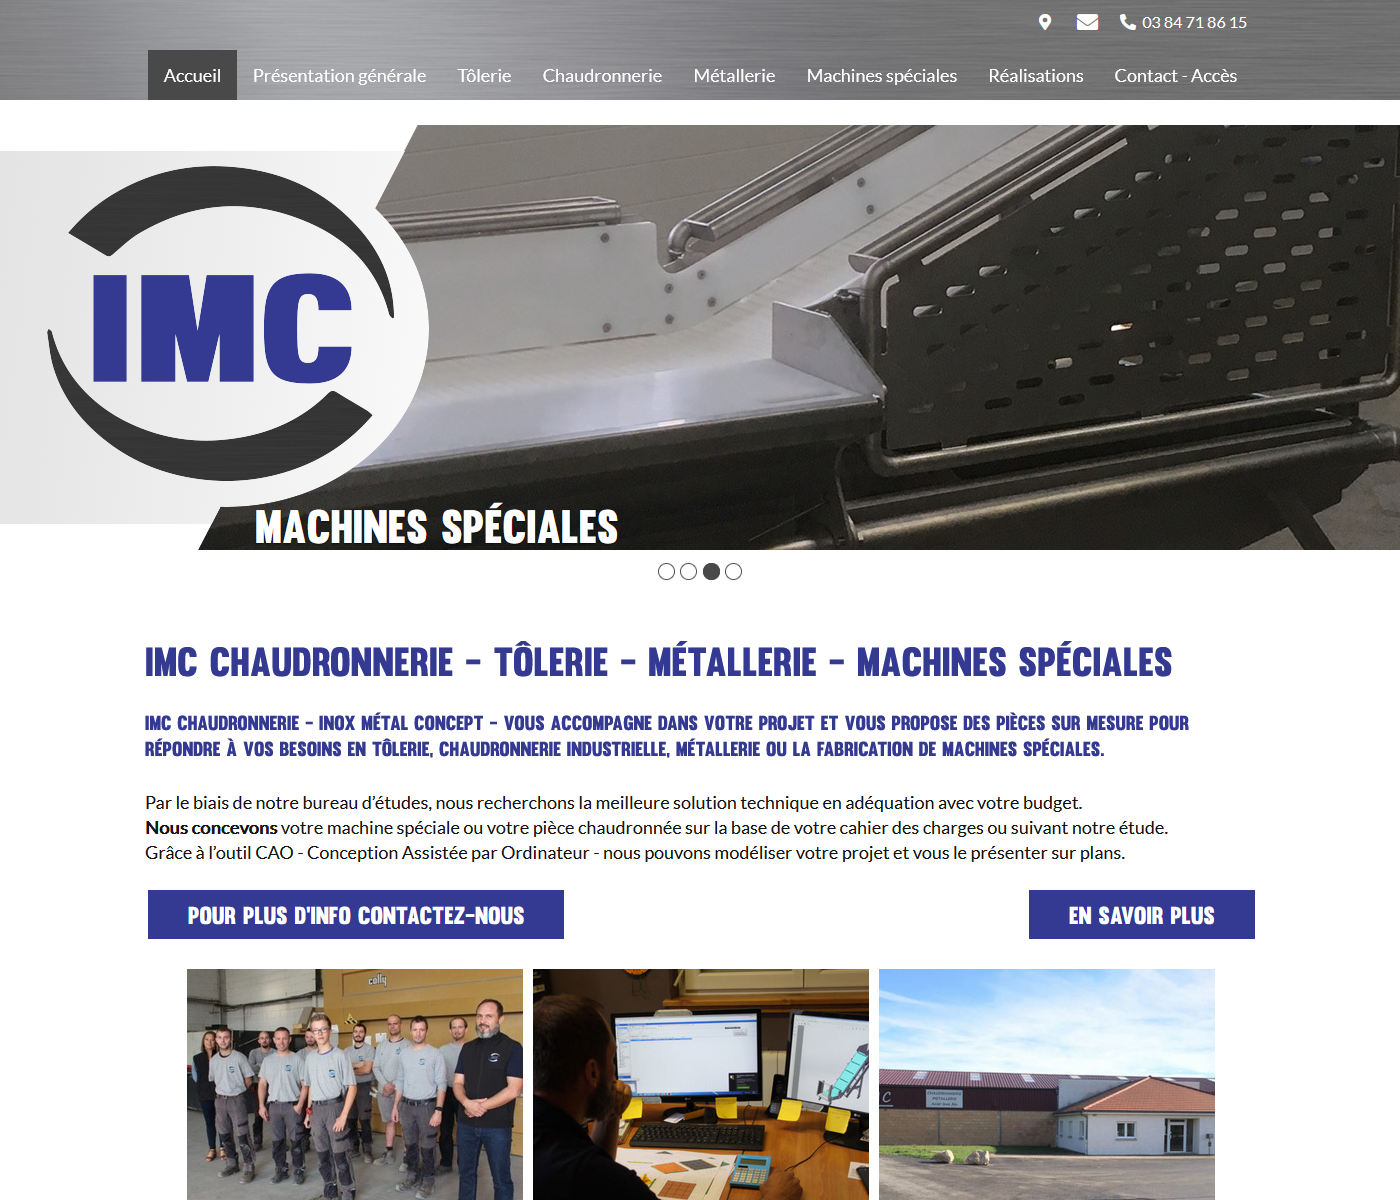 IMC CHAUDRONNERIE - Chaudronnerie - Tôlerie - Métallerie - machines spéciales